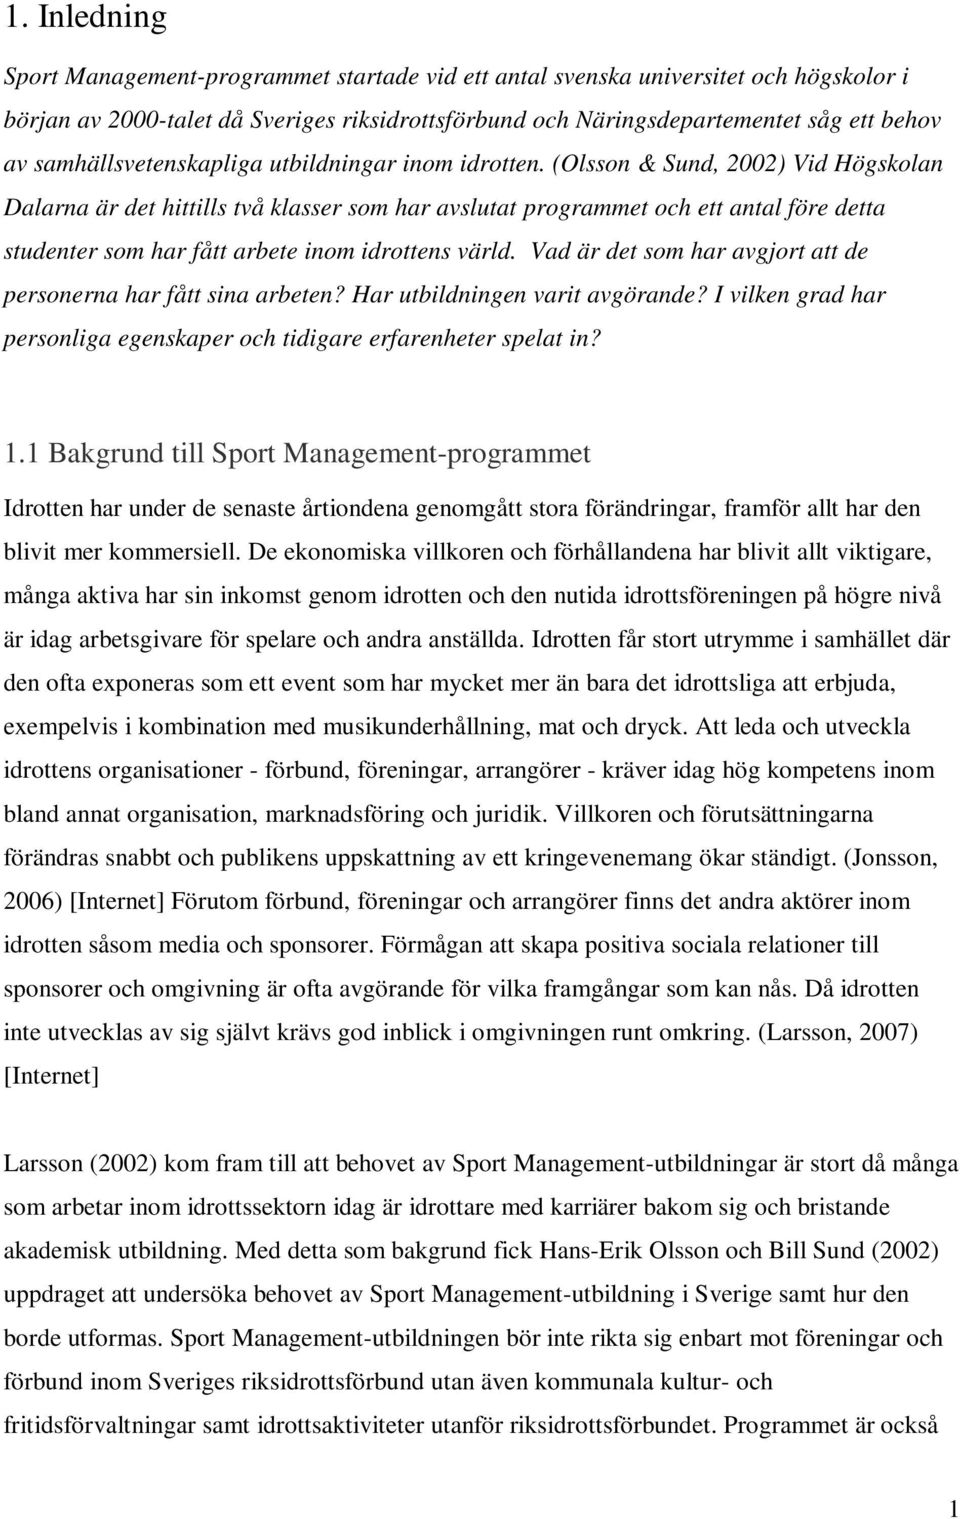 (Olsson & Sund, 2002) Vid Högskolan Dalarna är det hittills två klasser som har avslutat programmet och ett antal före detta studenter som har fått arbete inom idrottens värld.